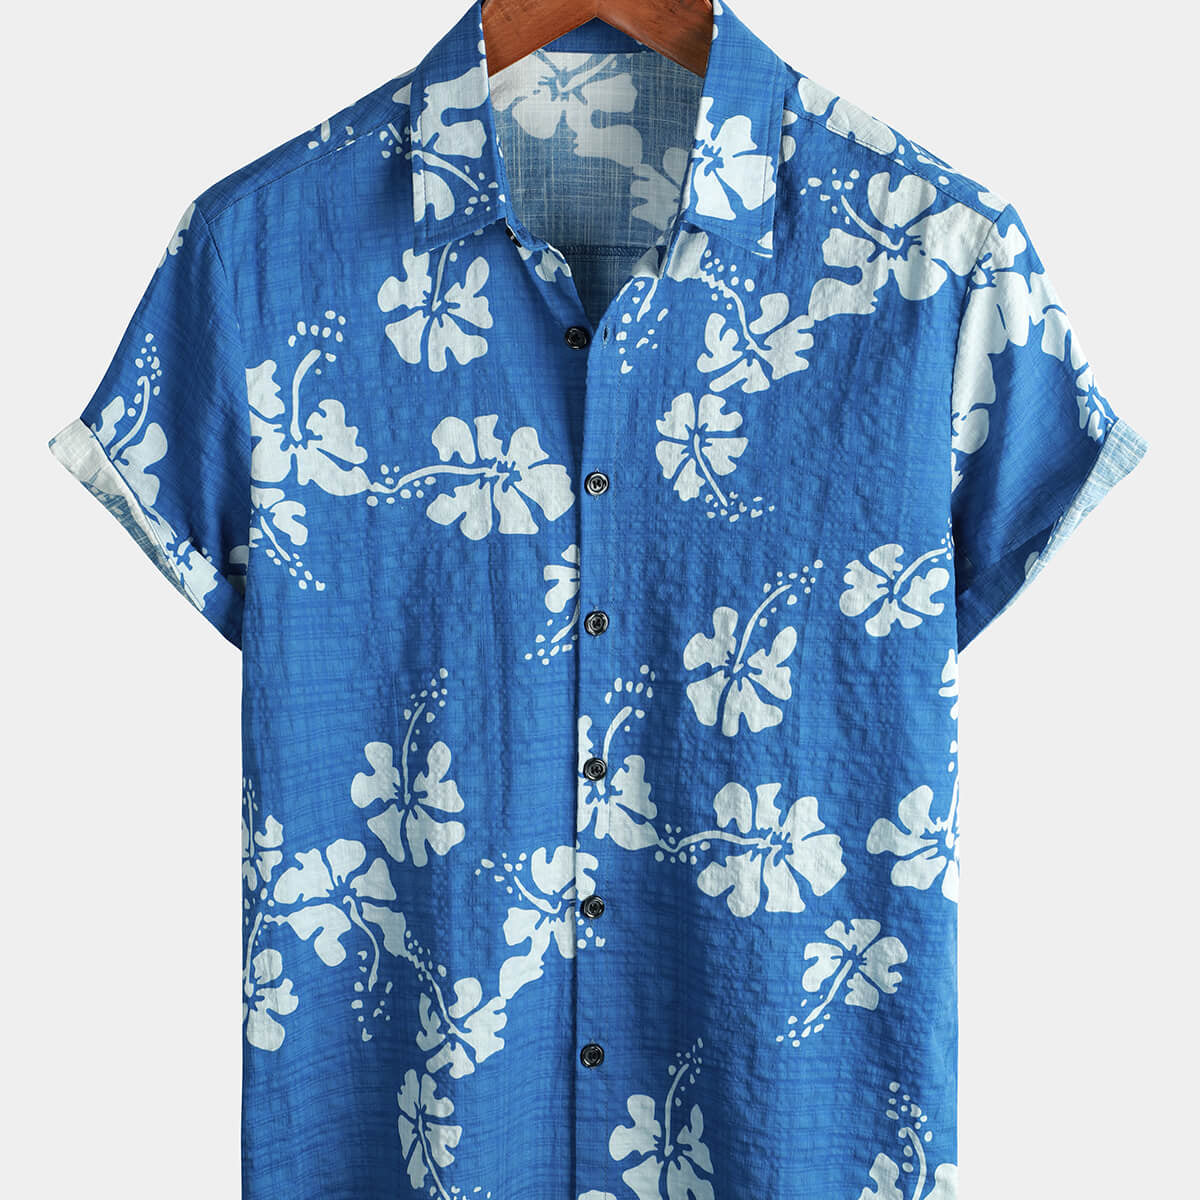 Chemise tropicale rétro à manches courtes pour homme boutonnée de couleur bleue avec motifs floraux hawaïens idéale pour la plage et les croisières